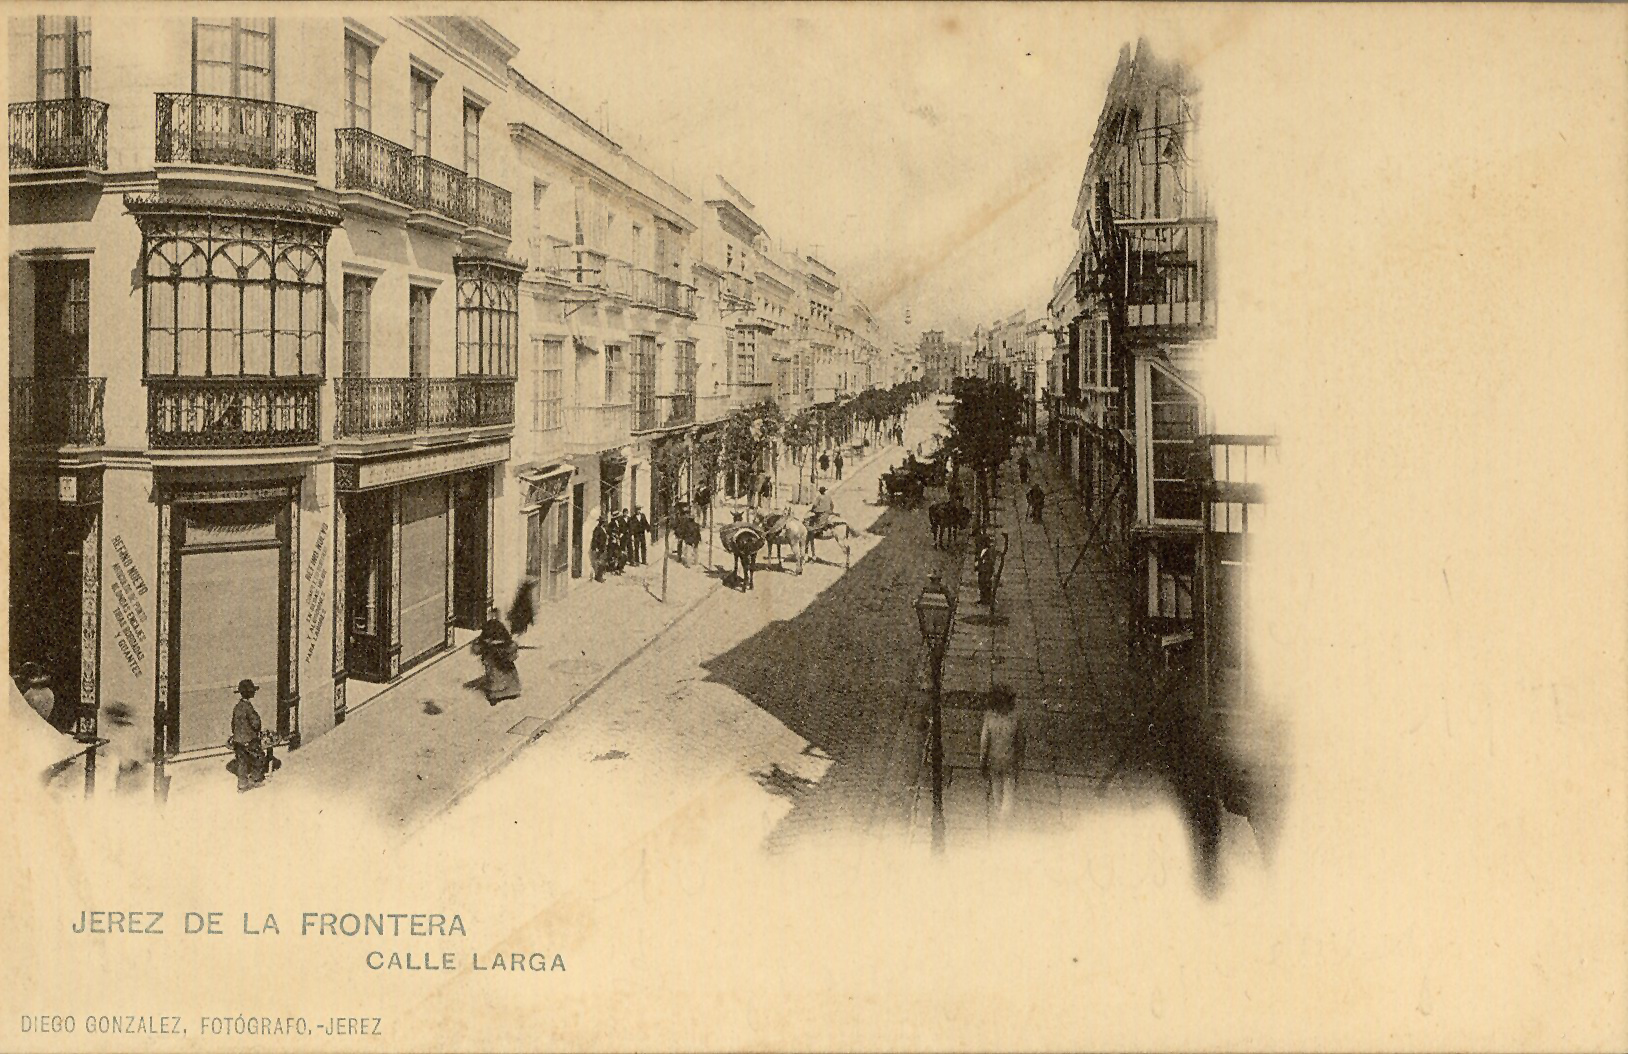 JEREZ DE LA FRONTERA: Calle Larga.1901 (DJ07653)